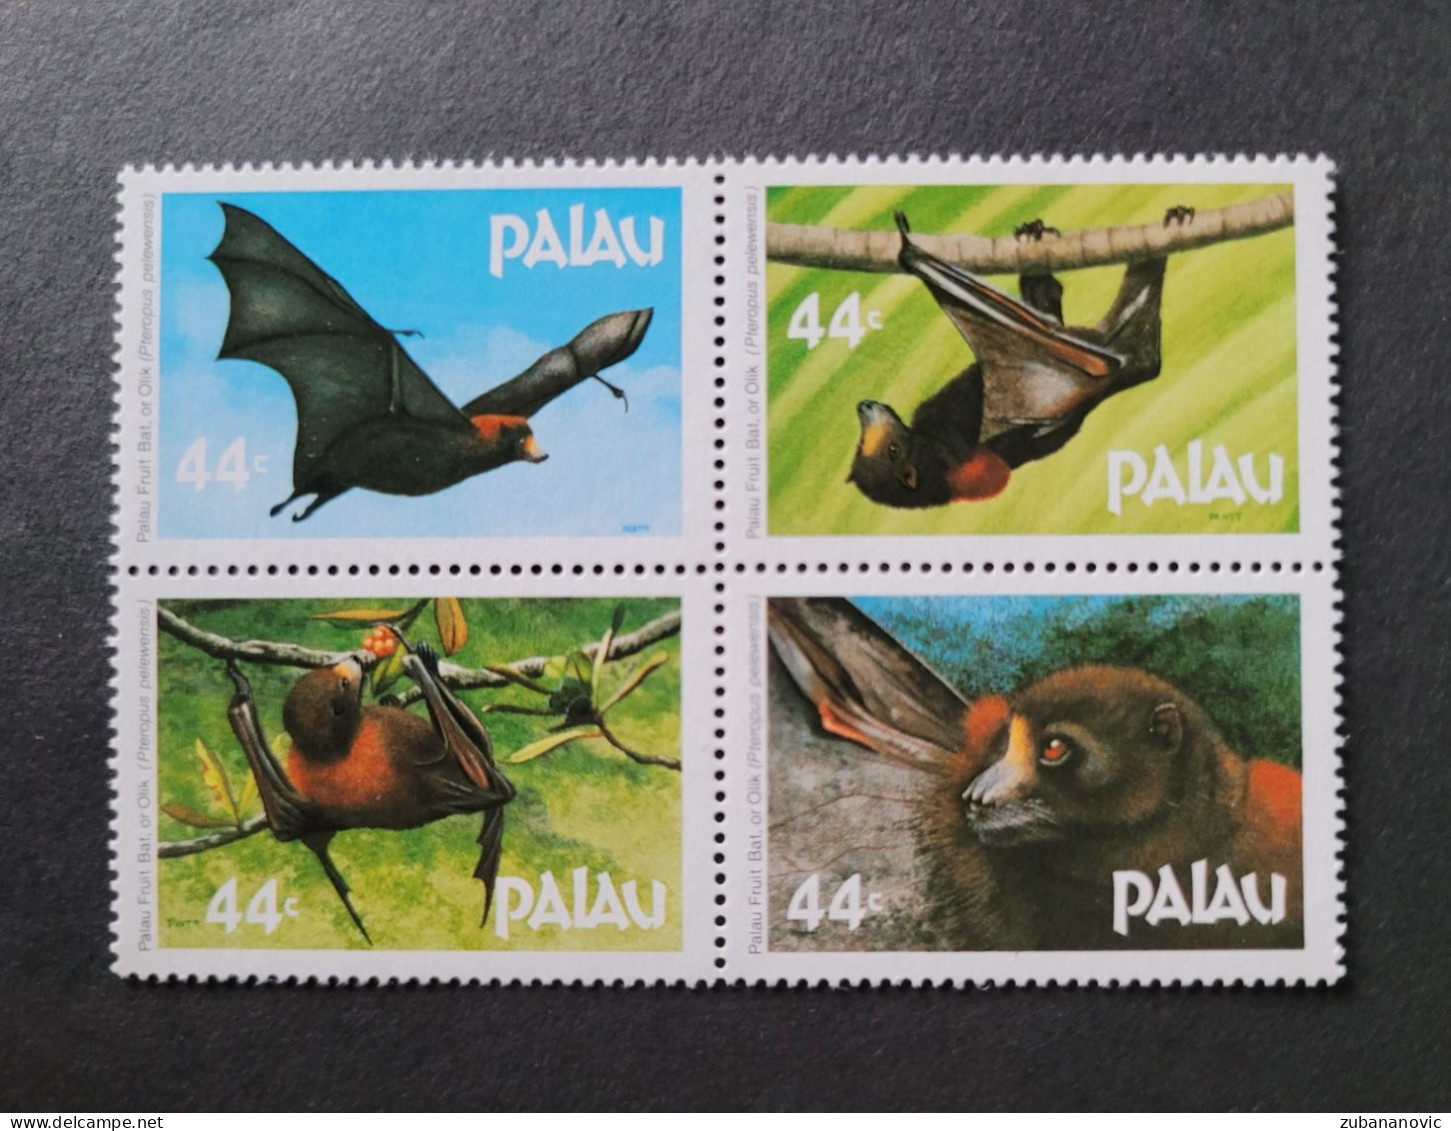 Palau 1987 Bats - Chauve-souris